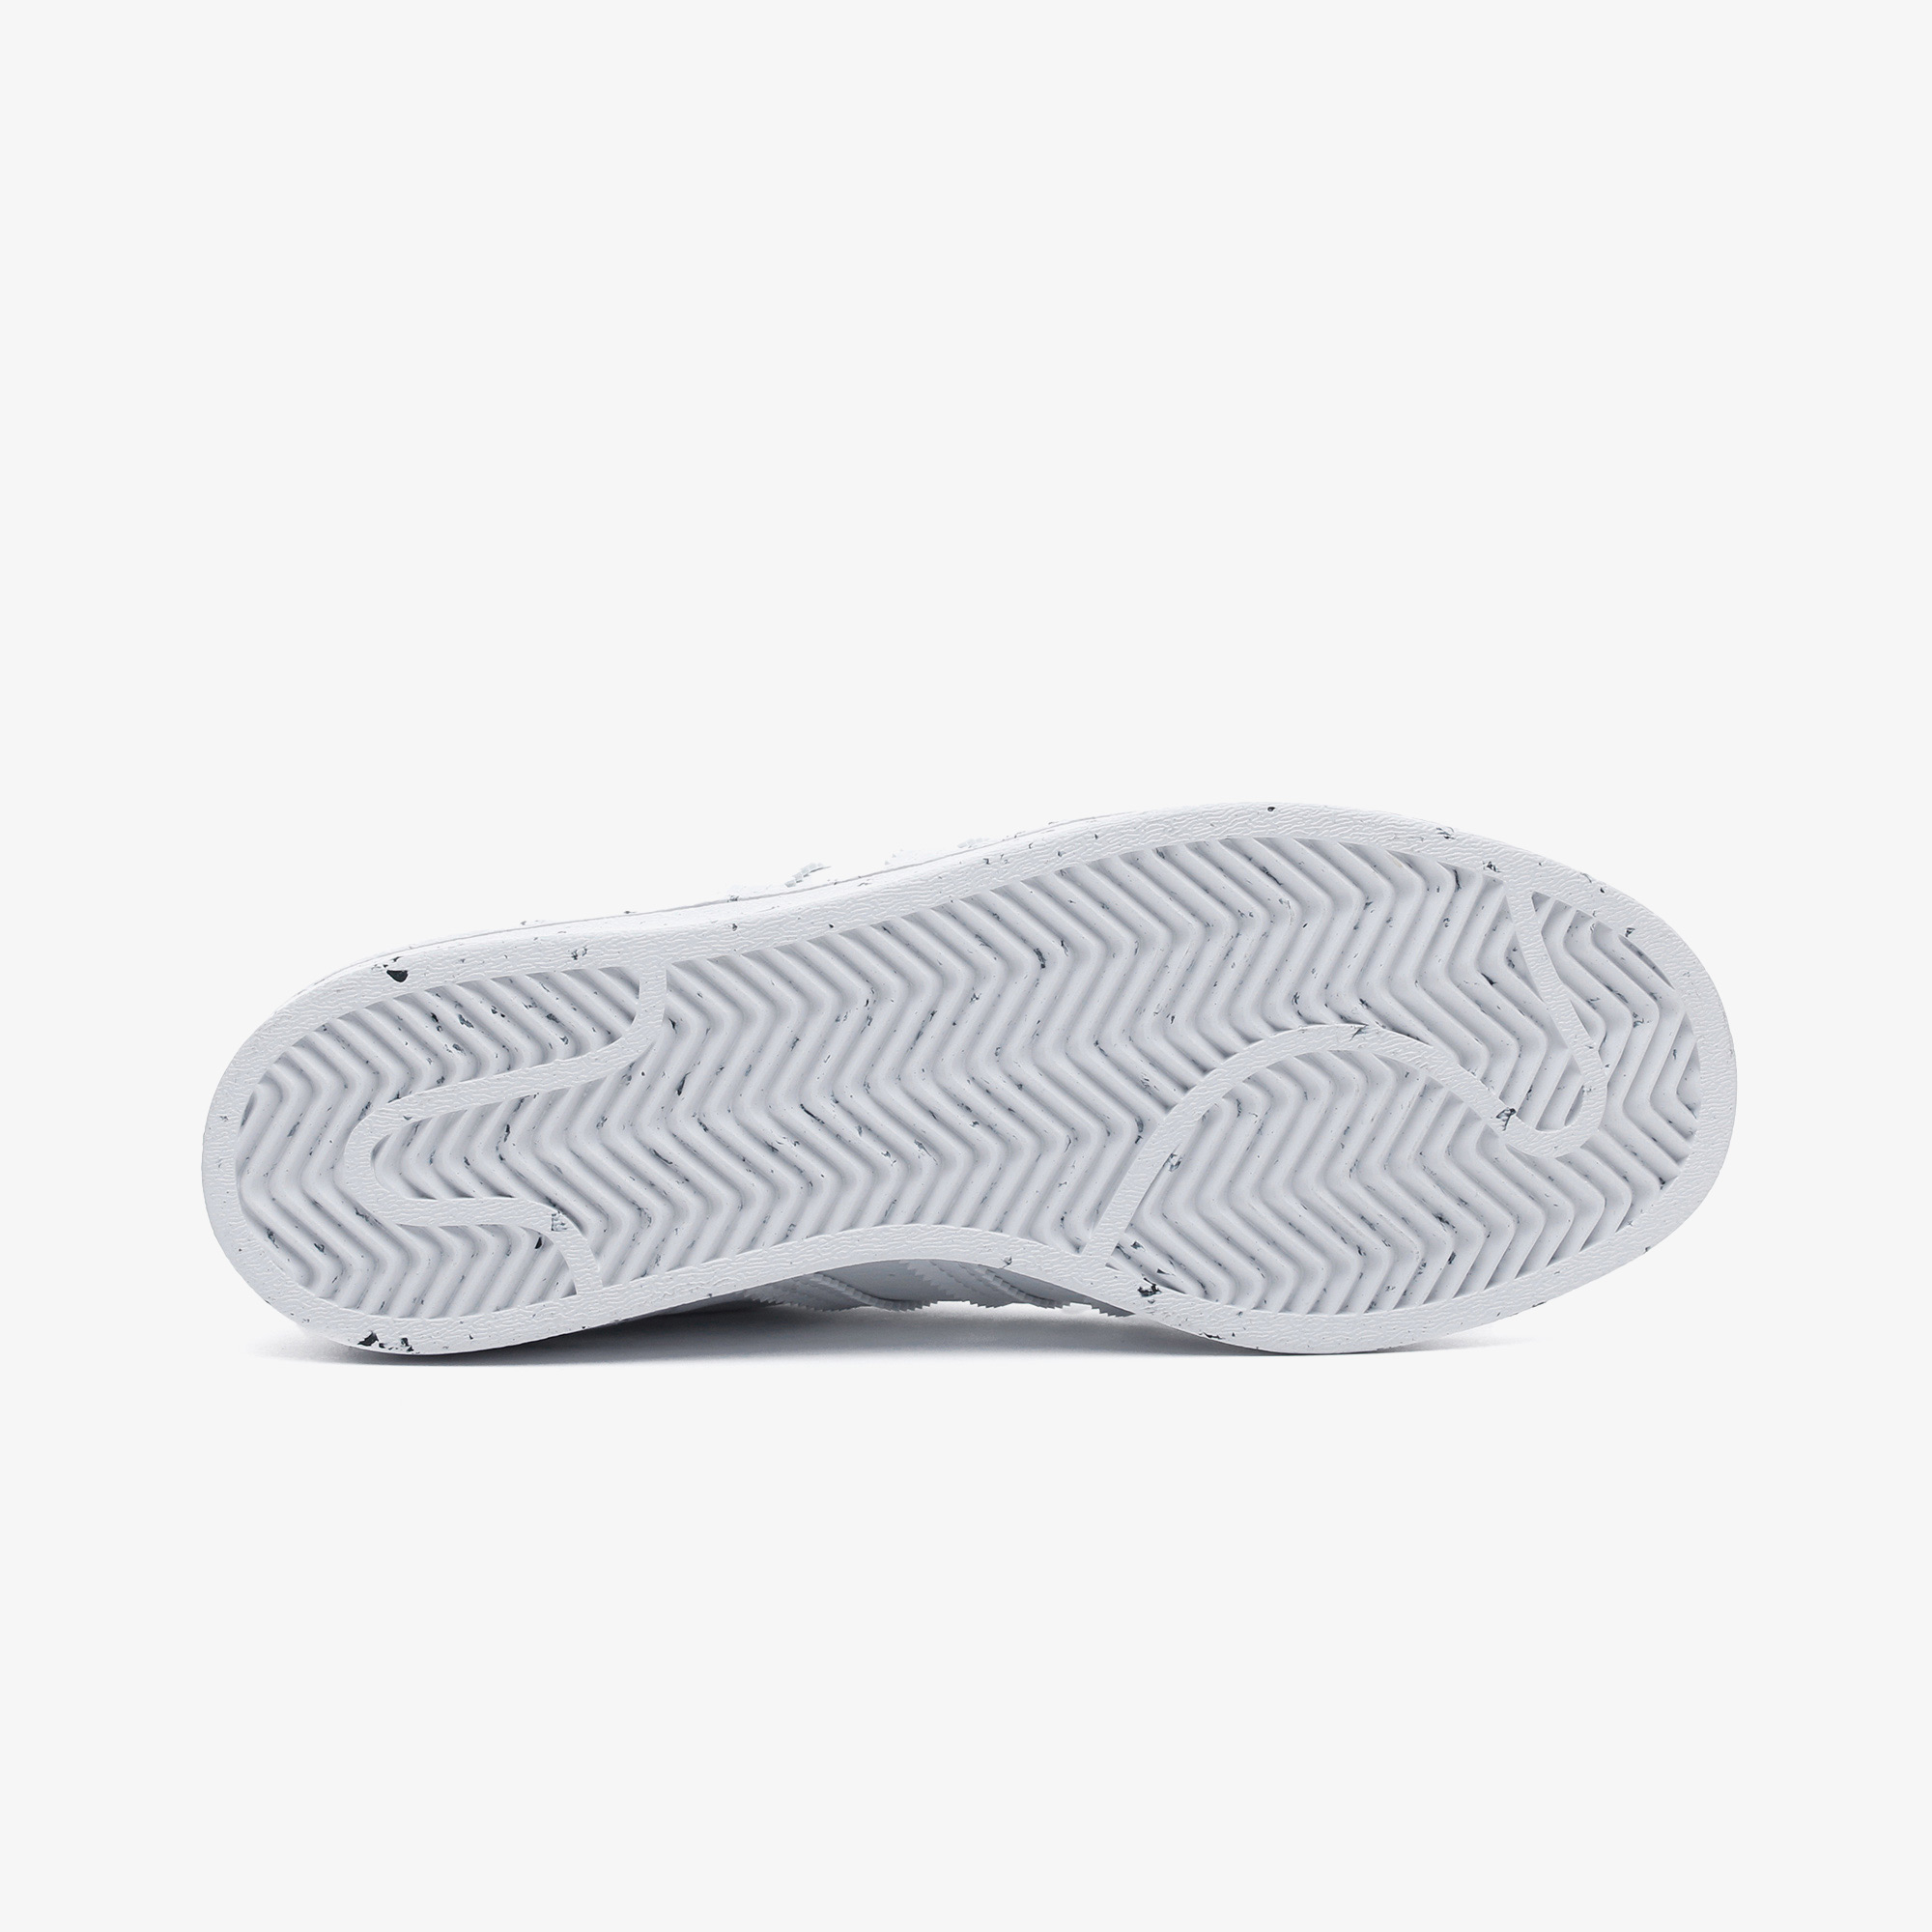 adidas Superstar Unisex Beyaz Spor Ayakkabı